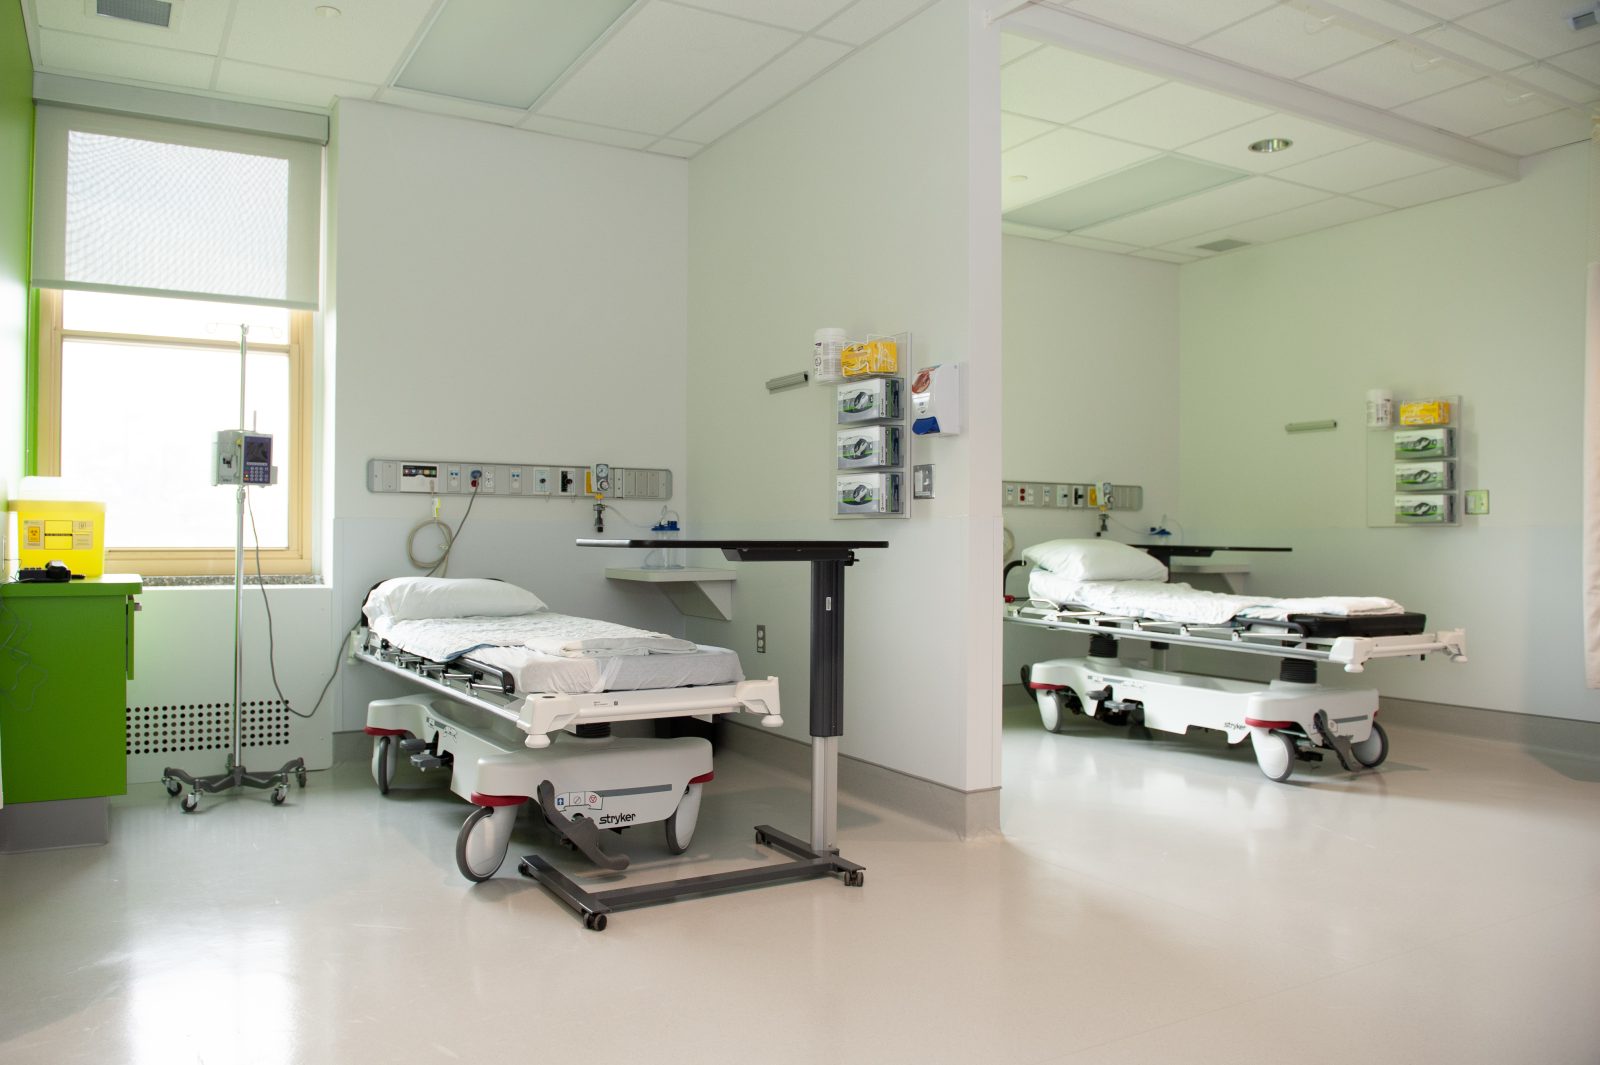 Opération Enfant Soleil octroie un total de 11 600 $ à l’hôpital Sainte-Croix et au Centre Normand Léveillé